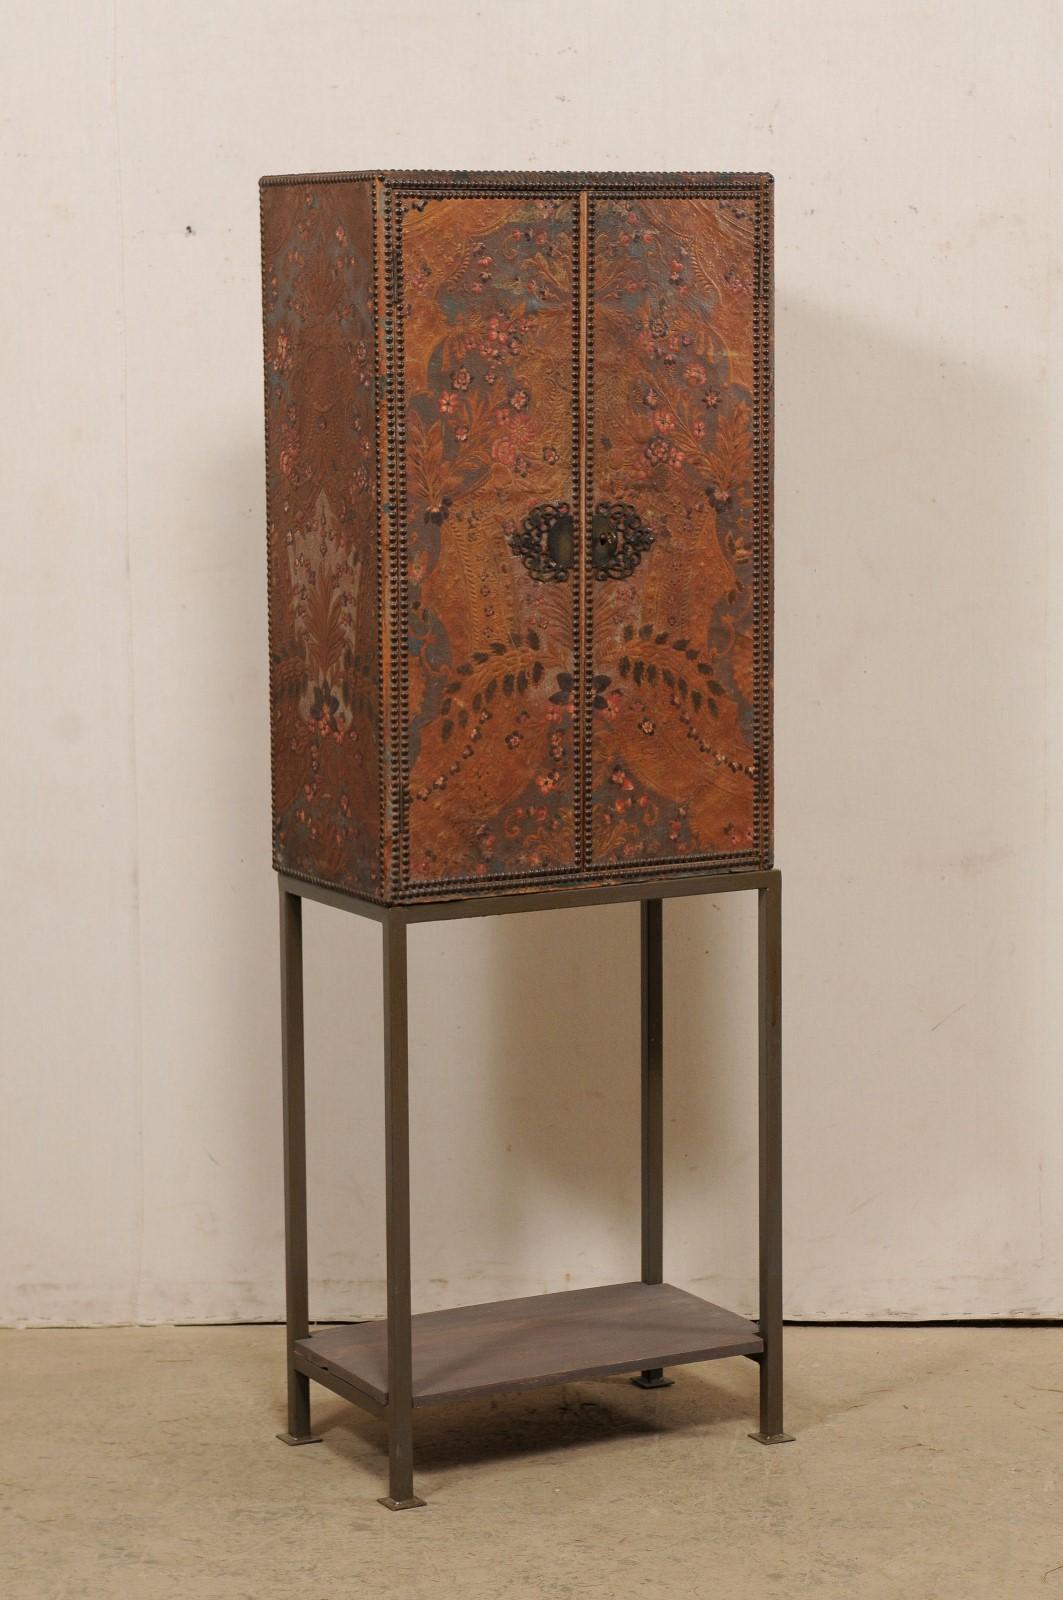 Une armoire en cuir gaufré espagnol du début du 20e siècle, sur une base en fer personnalisée plus récente. Ce meuble ancien d'Espagne est magnifiquement enveloppé dans du cuir gaufré à motif floral, avec des garnitures à tête de clou et des